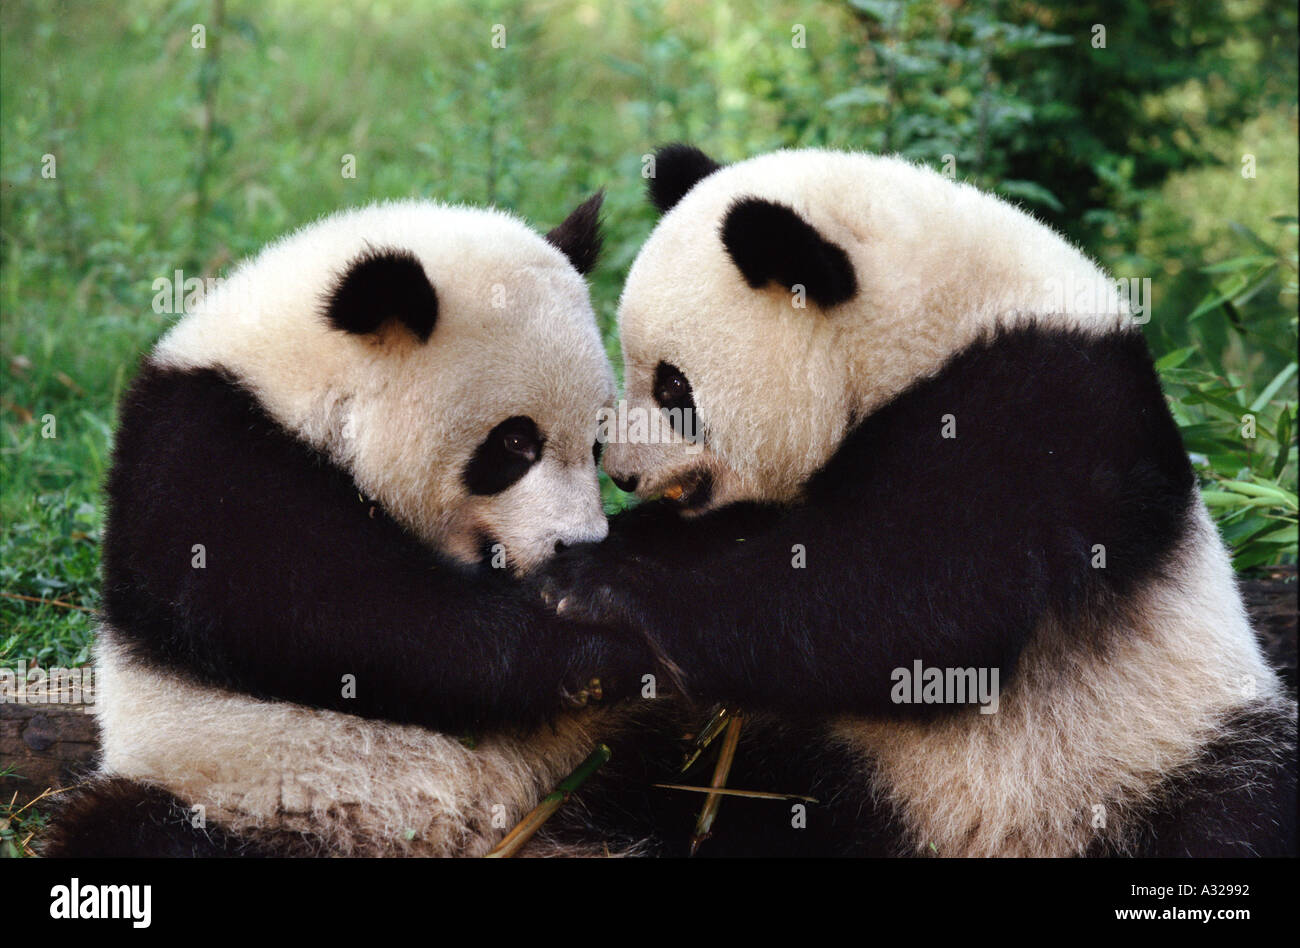 Обнять панду. Панды обнимаются. Объятия панды. Две панды обнимаются. Панда обнимашка.